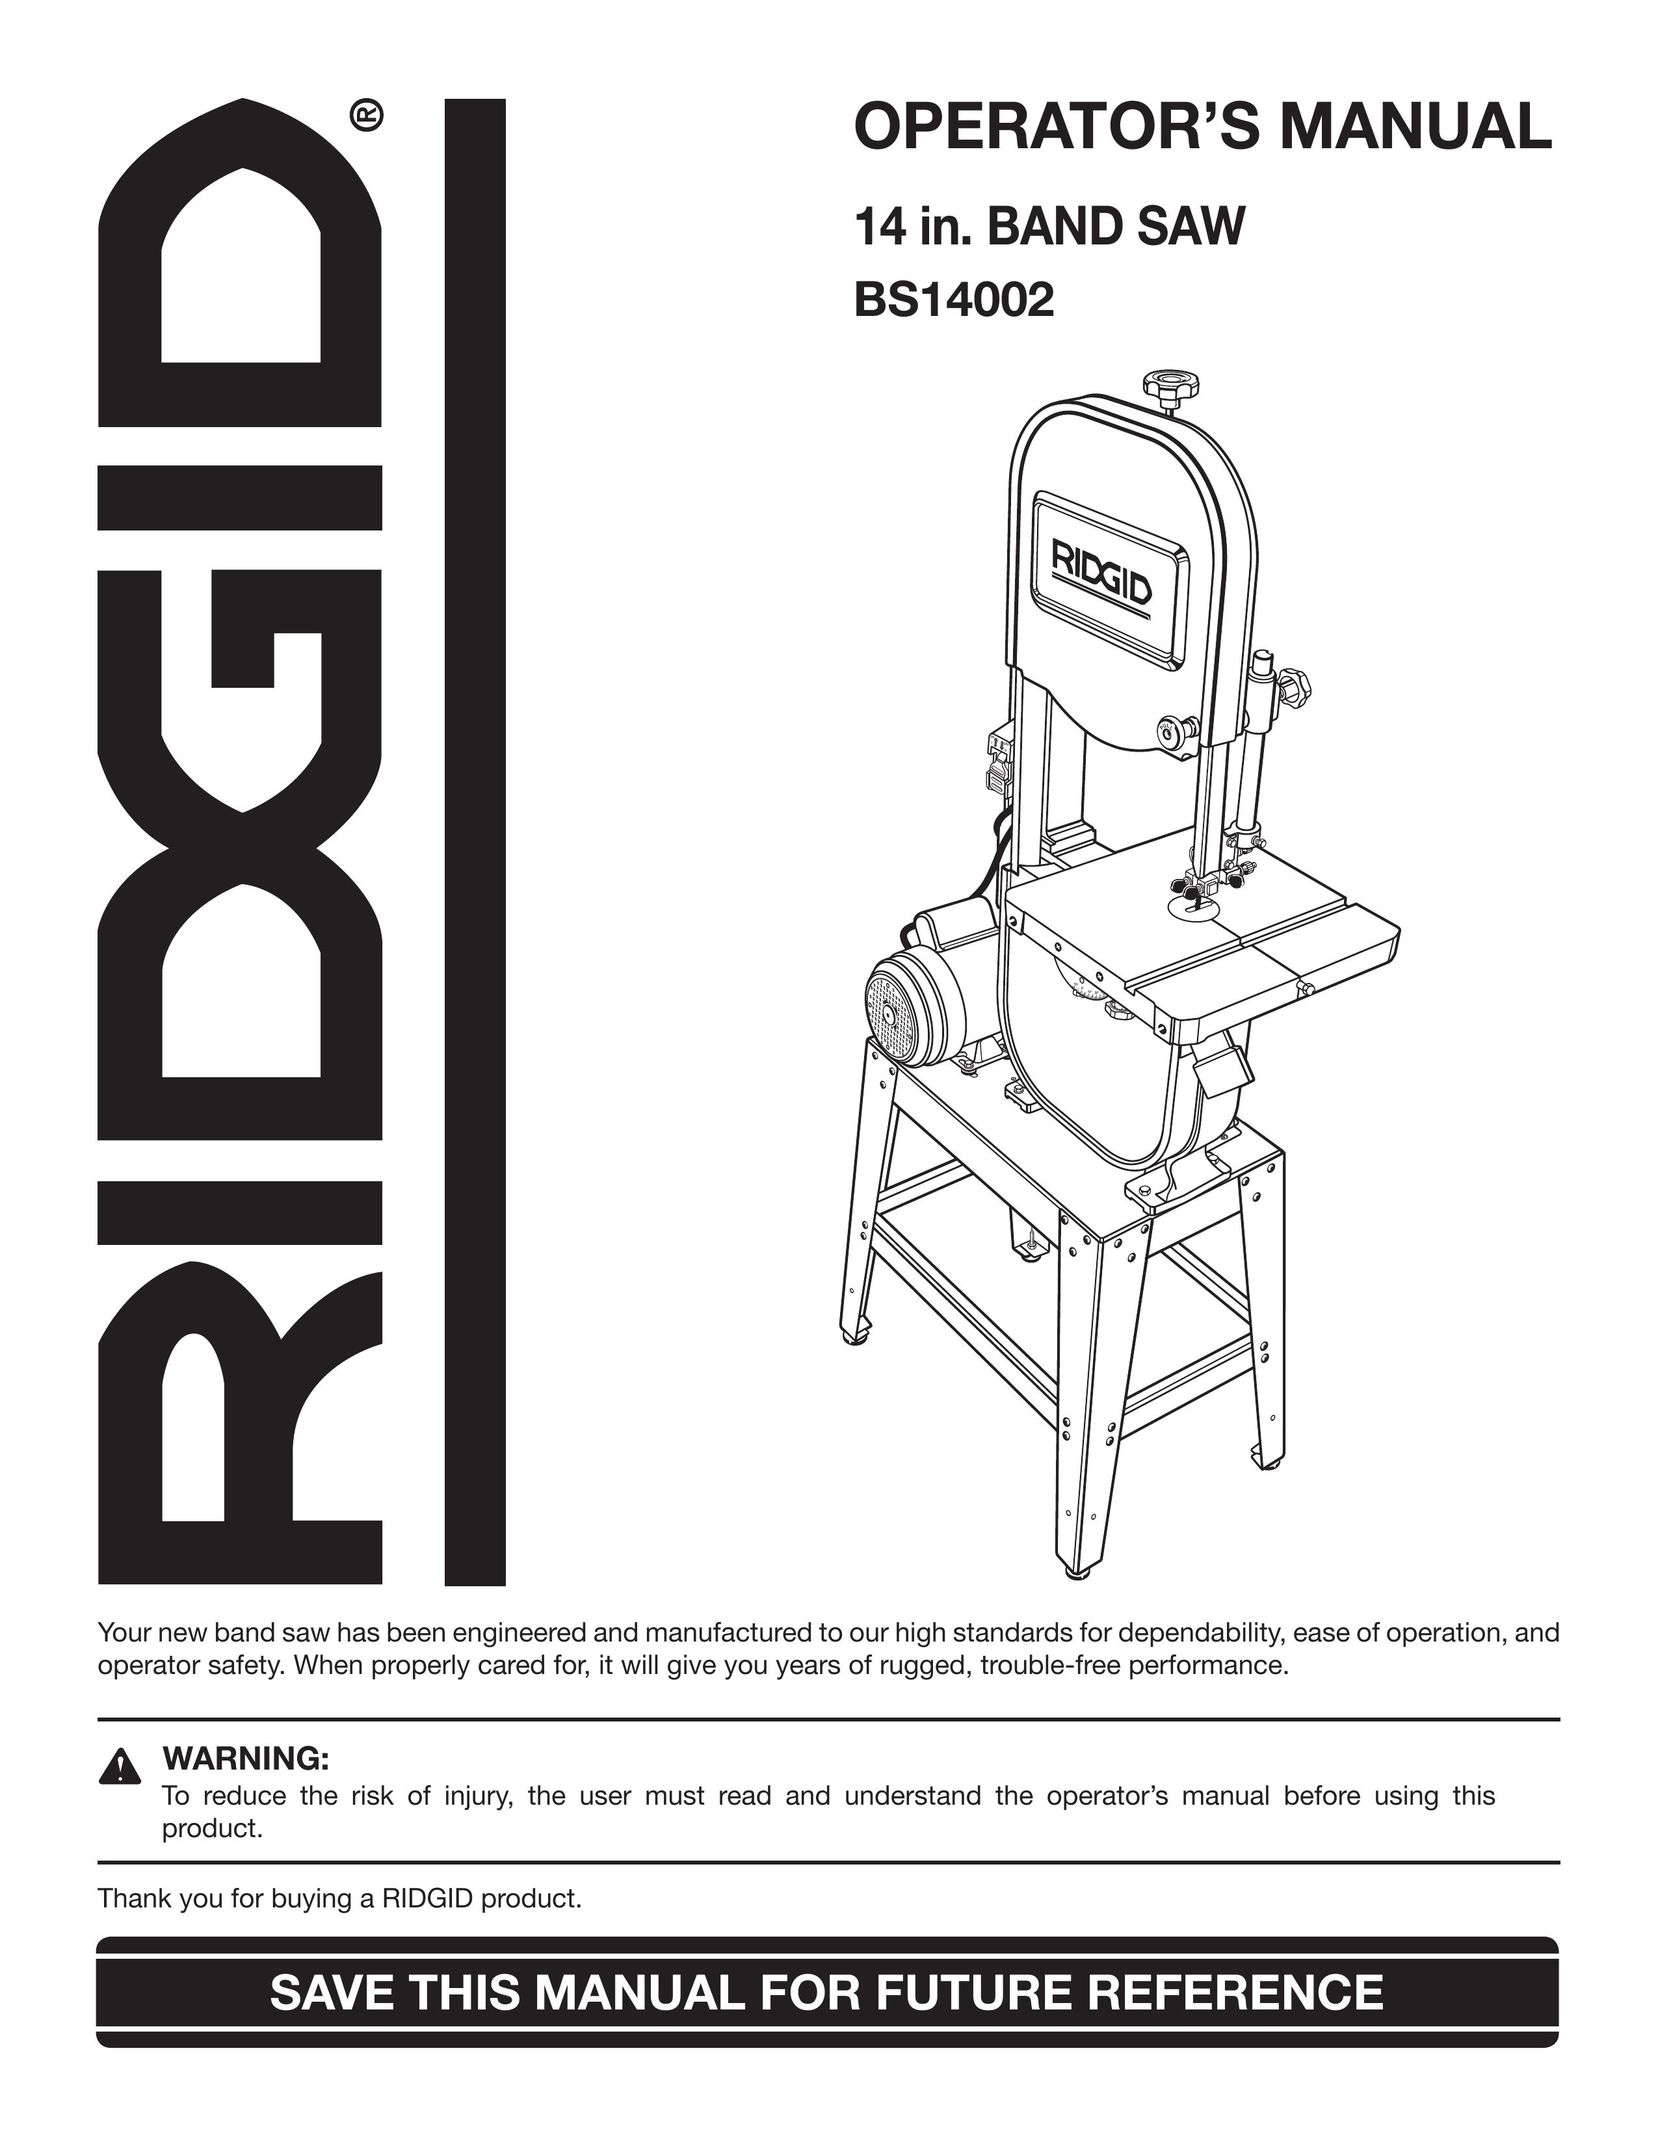 RIDGID BS14002 Saw User Manual